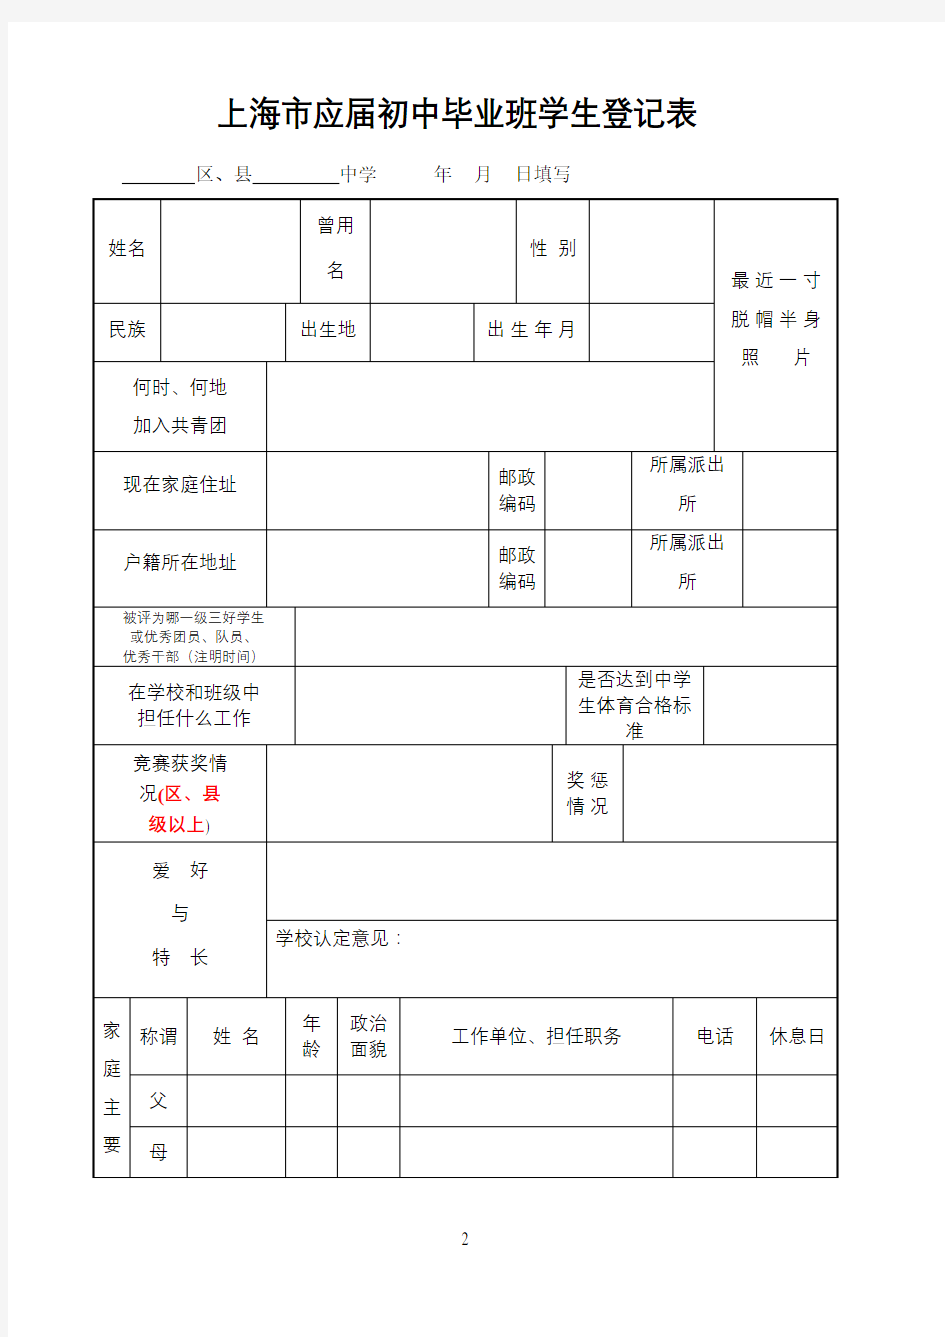 上海市应届初中毕业班学生登记表(填写样张)